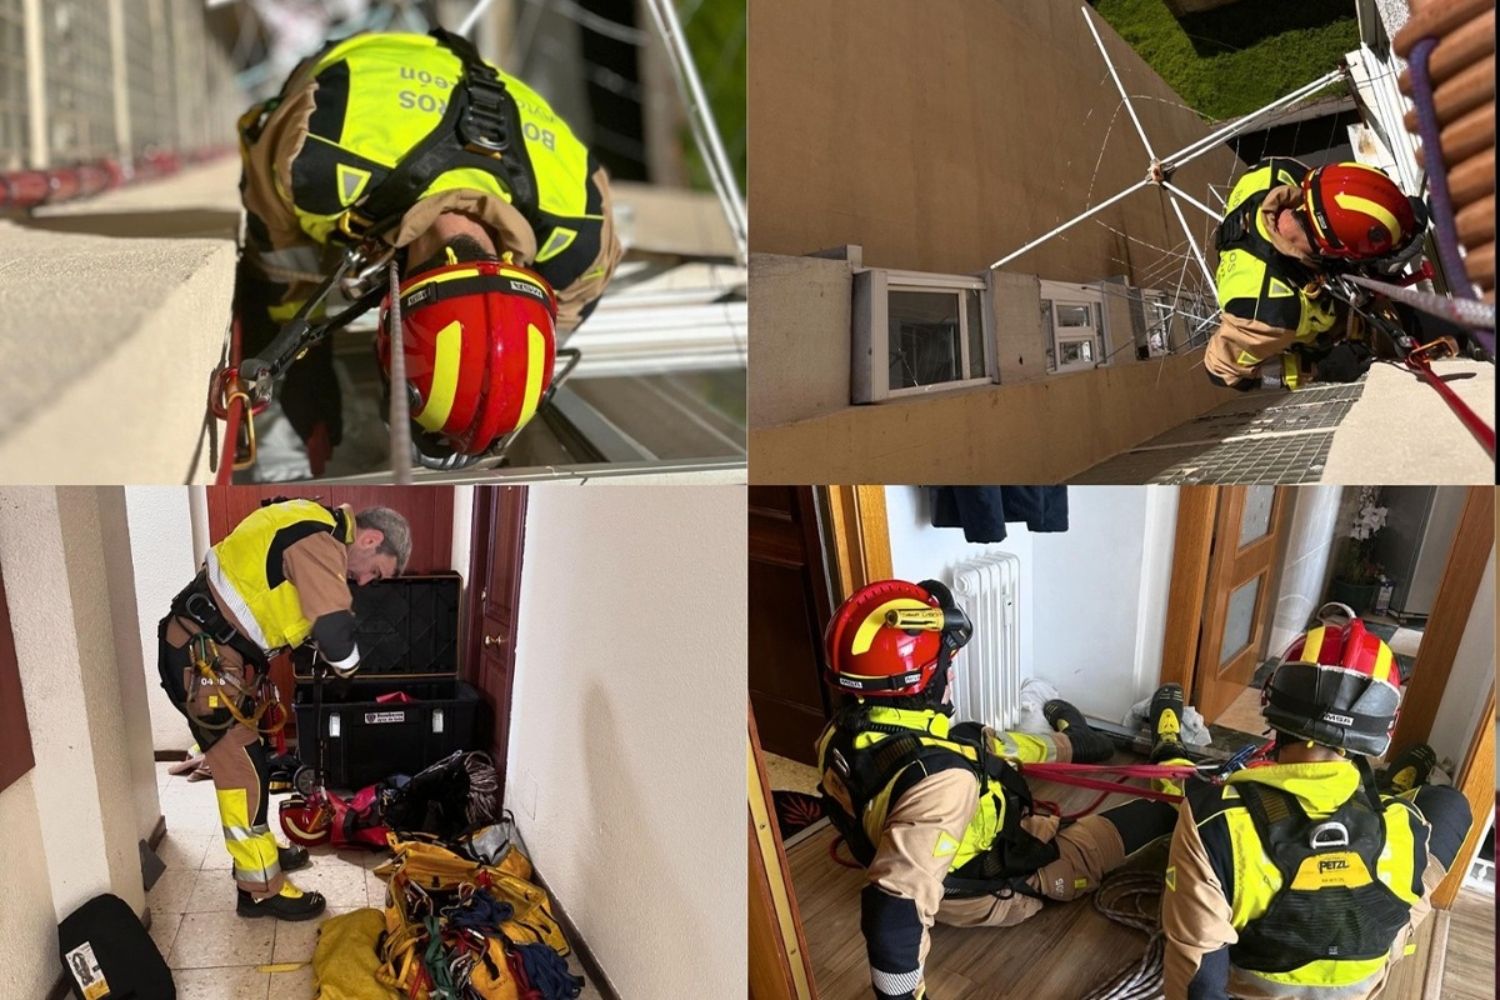 Los bomberos de León acceden a una vivienda en una complicada operación tras un incidente sanitario